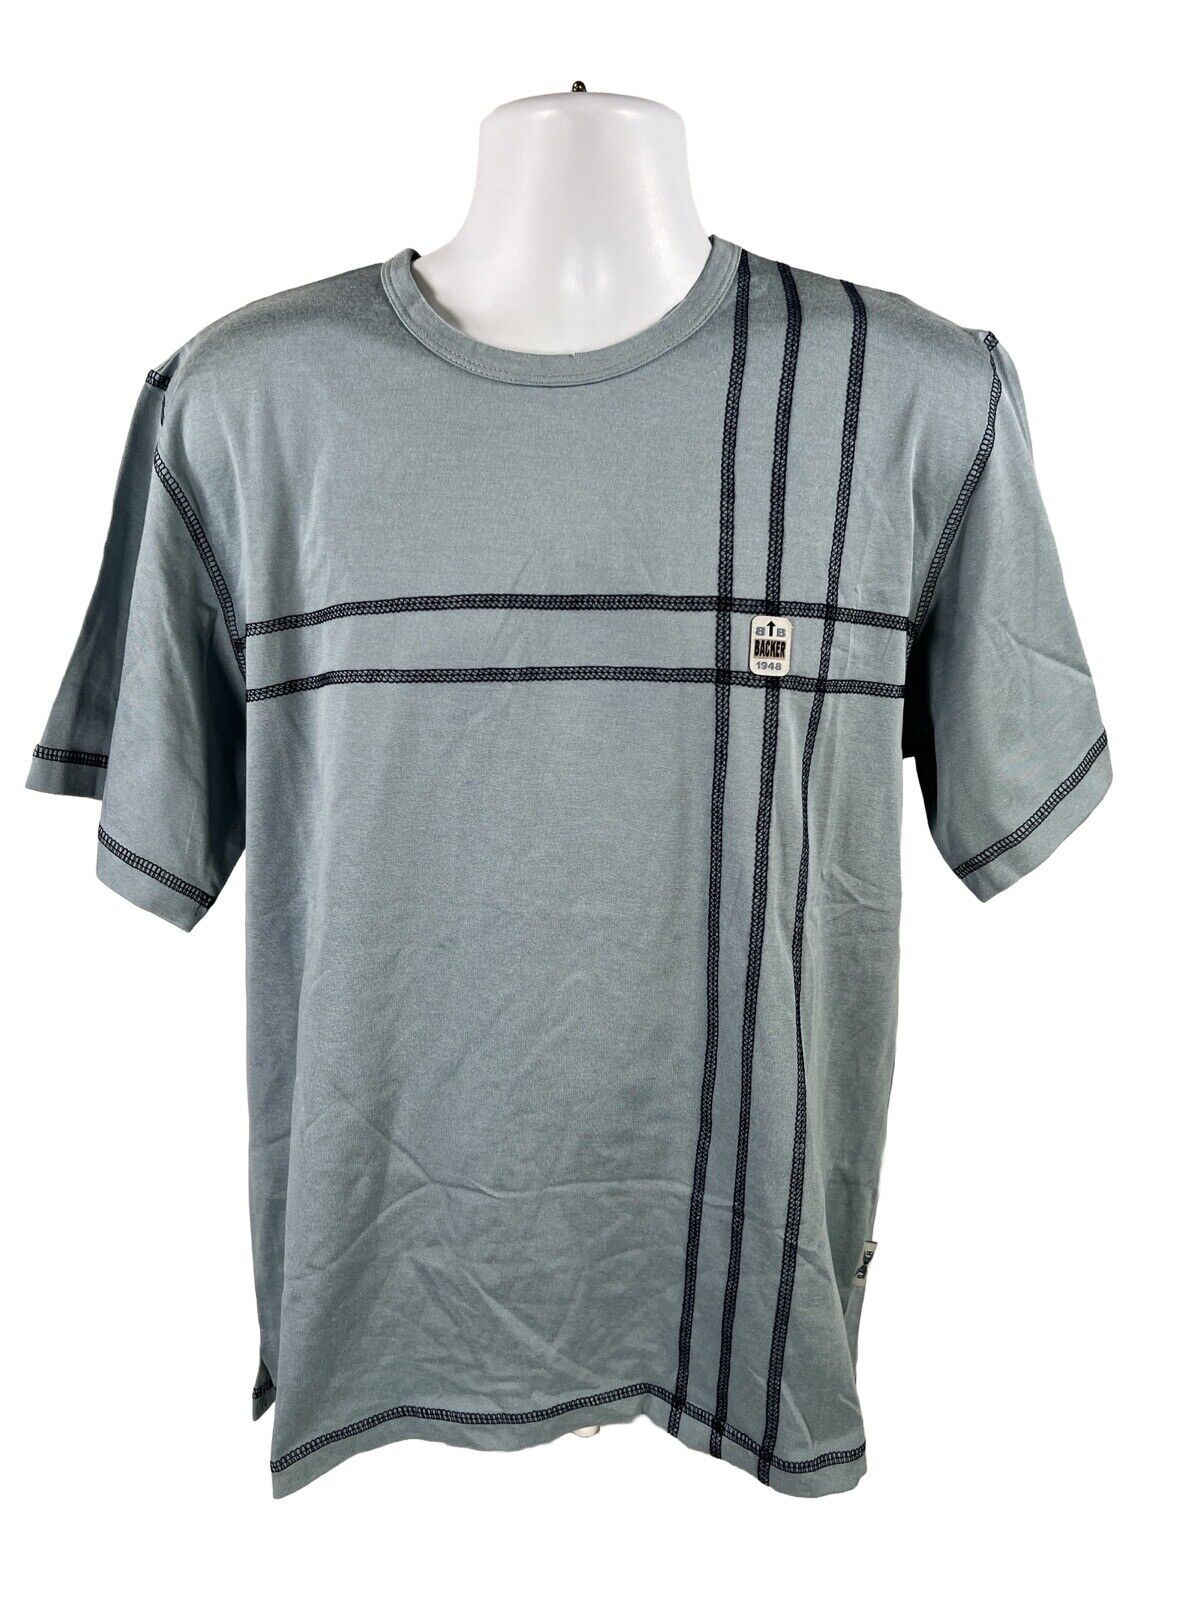 NEW Backer BCR Men's Blue Short Sleeve  T-Shirt - XL